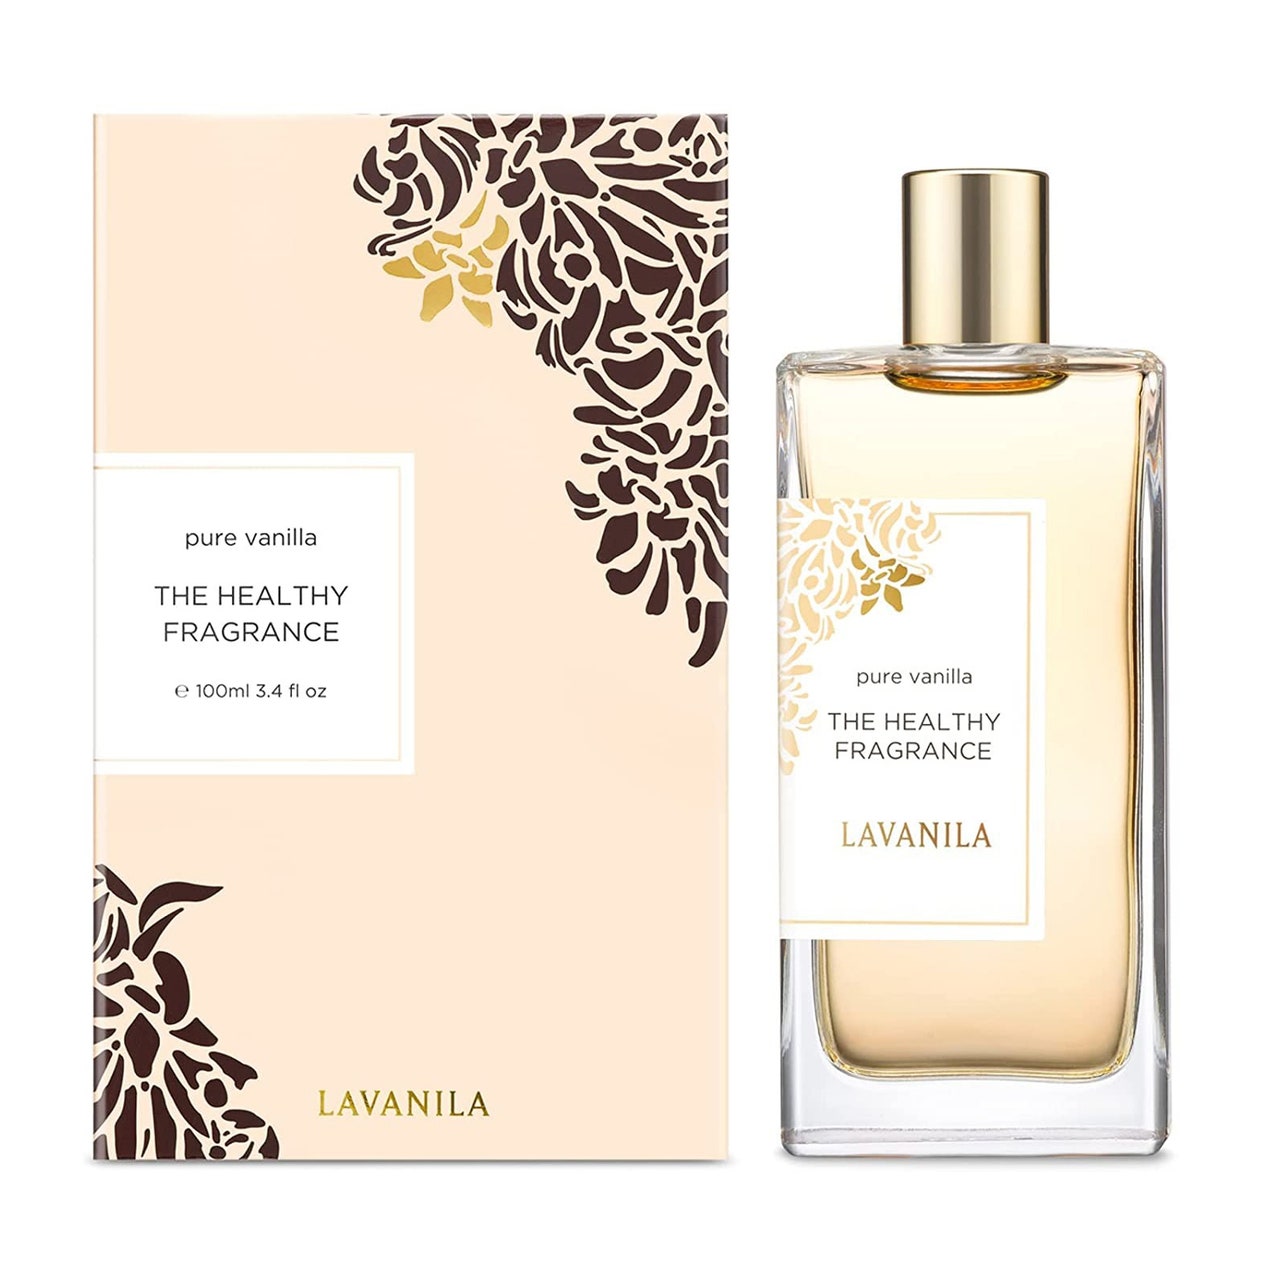 Lavanila The Healthy Fragrance Pure Vanilla rechteckige Flasche mit blassgelbem Parfüm mit goldener Kappe und blassgelber Schachtel auf weißem Hintergrund